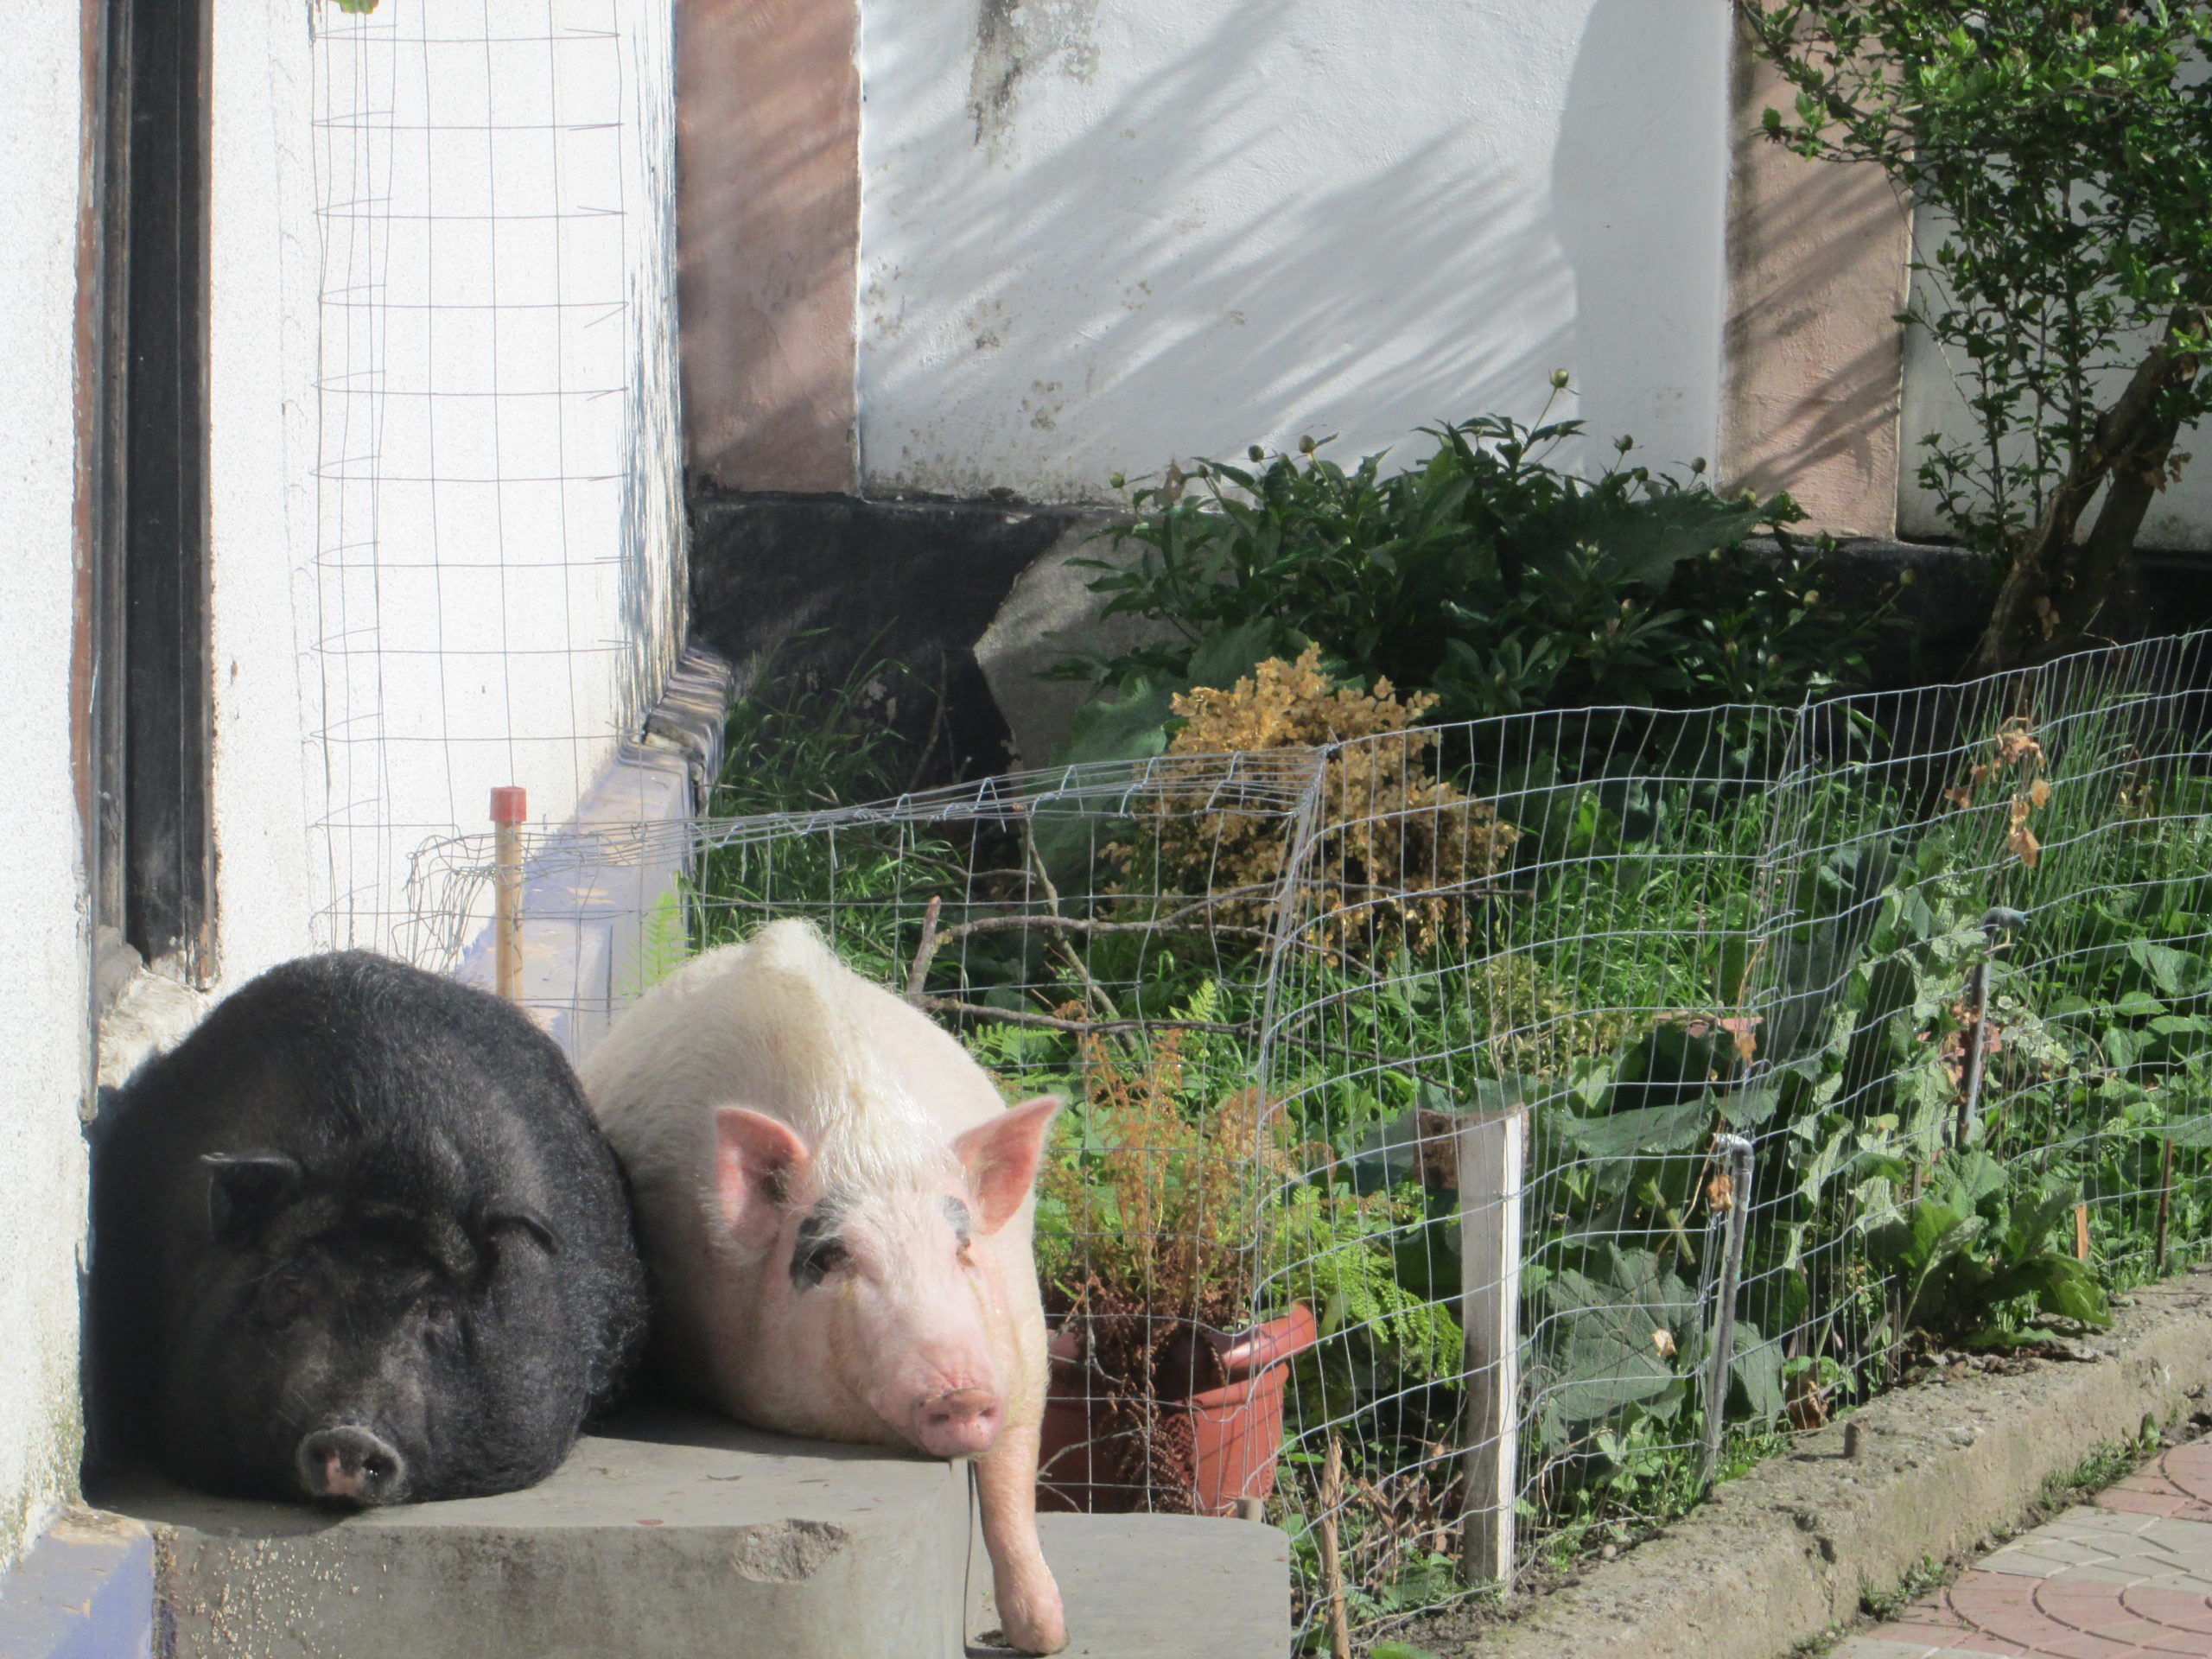 Anchetă a Poliției după ce niște indivizi au încercat să o fure pe Daisy, un porc vietnamez crescut ca animal de companie, la Babșa